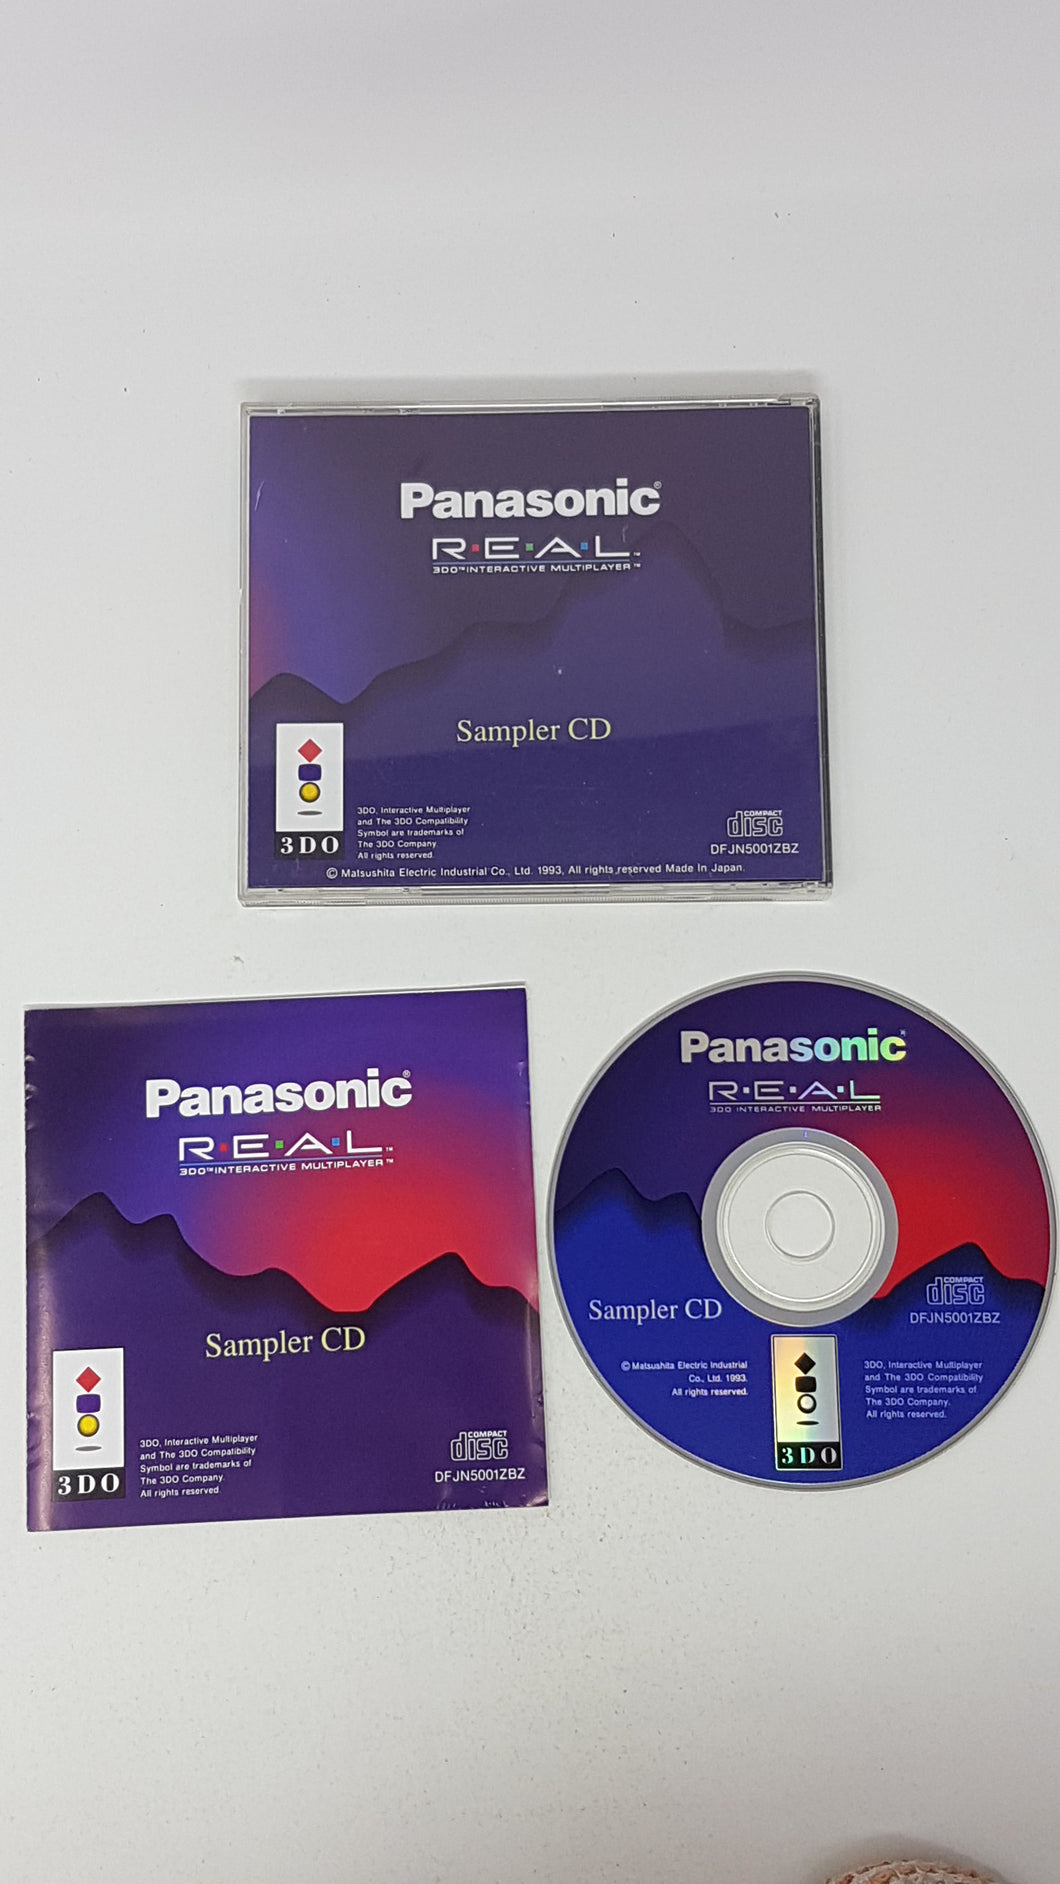 Panasonic Sampler CD - 3DO